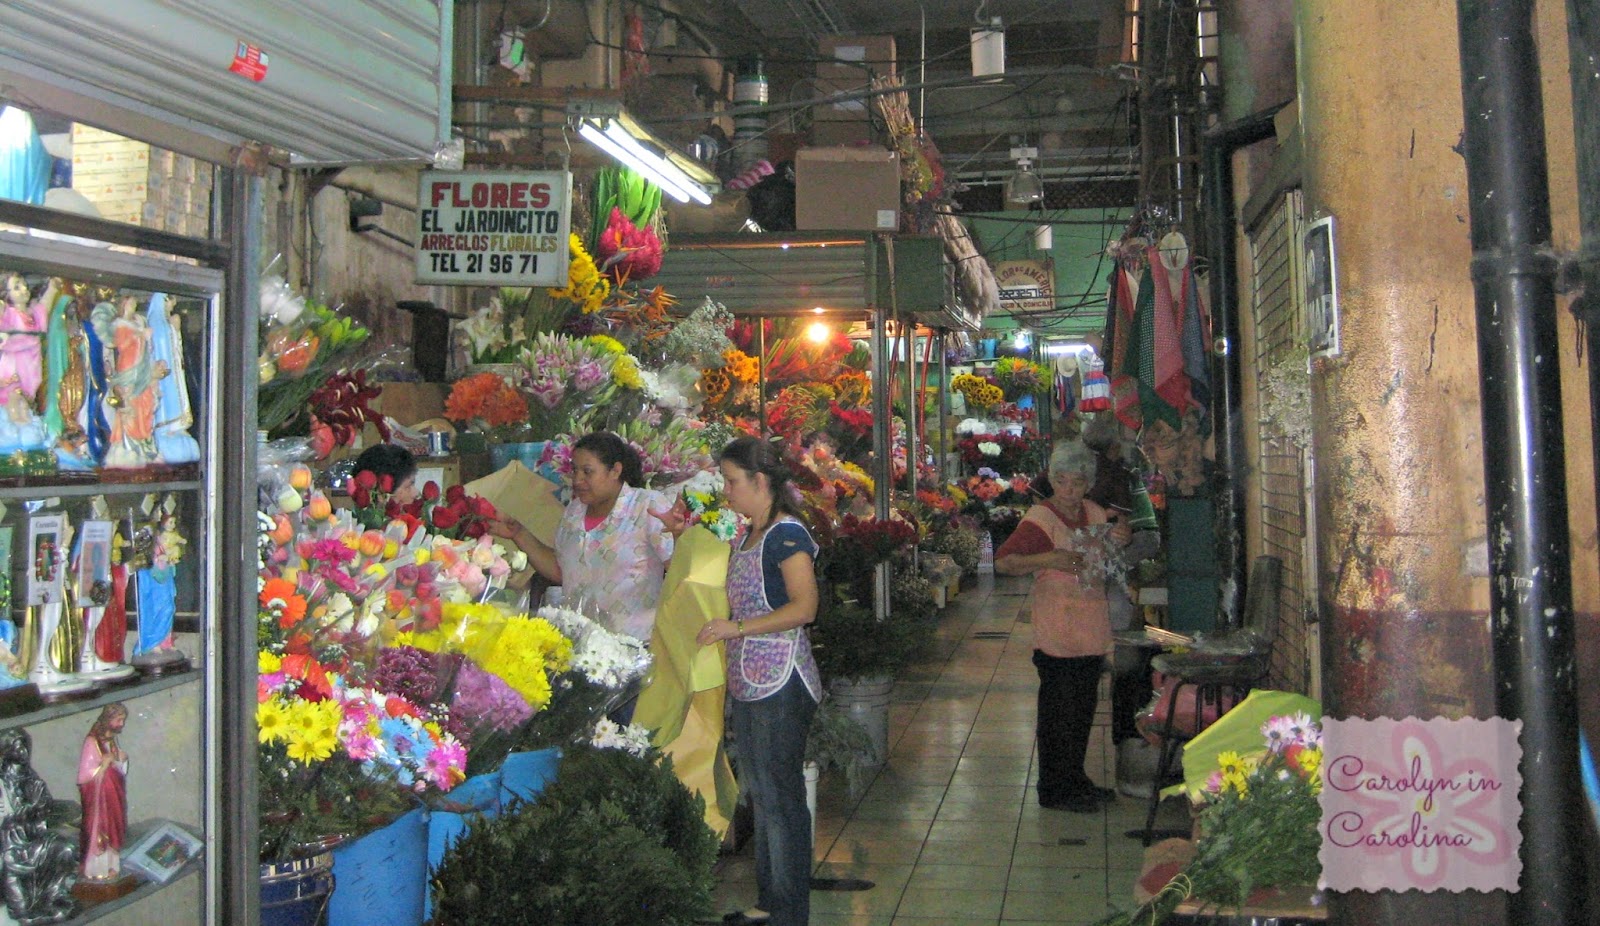 Carolyn in Carolina: Mercado Central ~ Central Market, San Jose Costa Rica